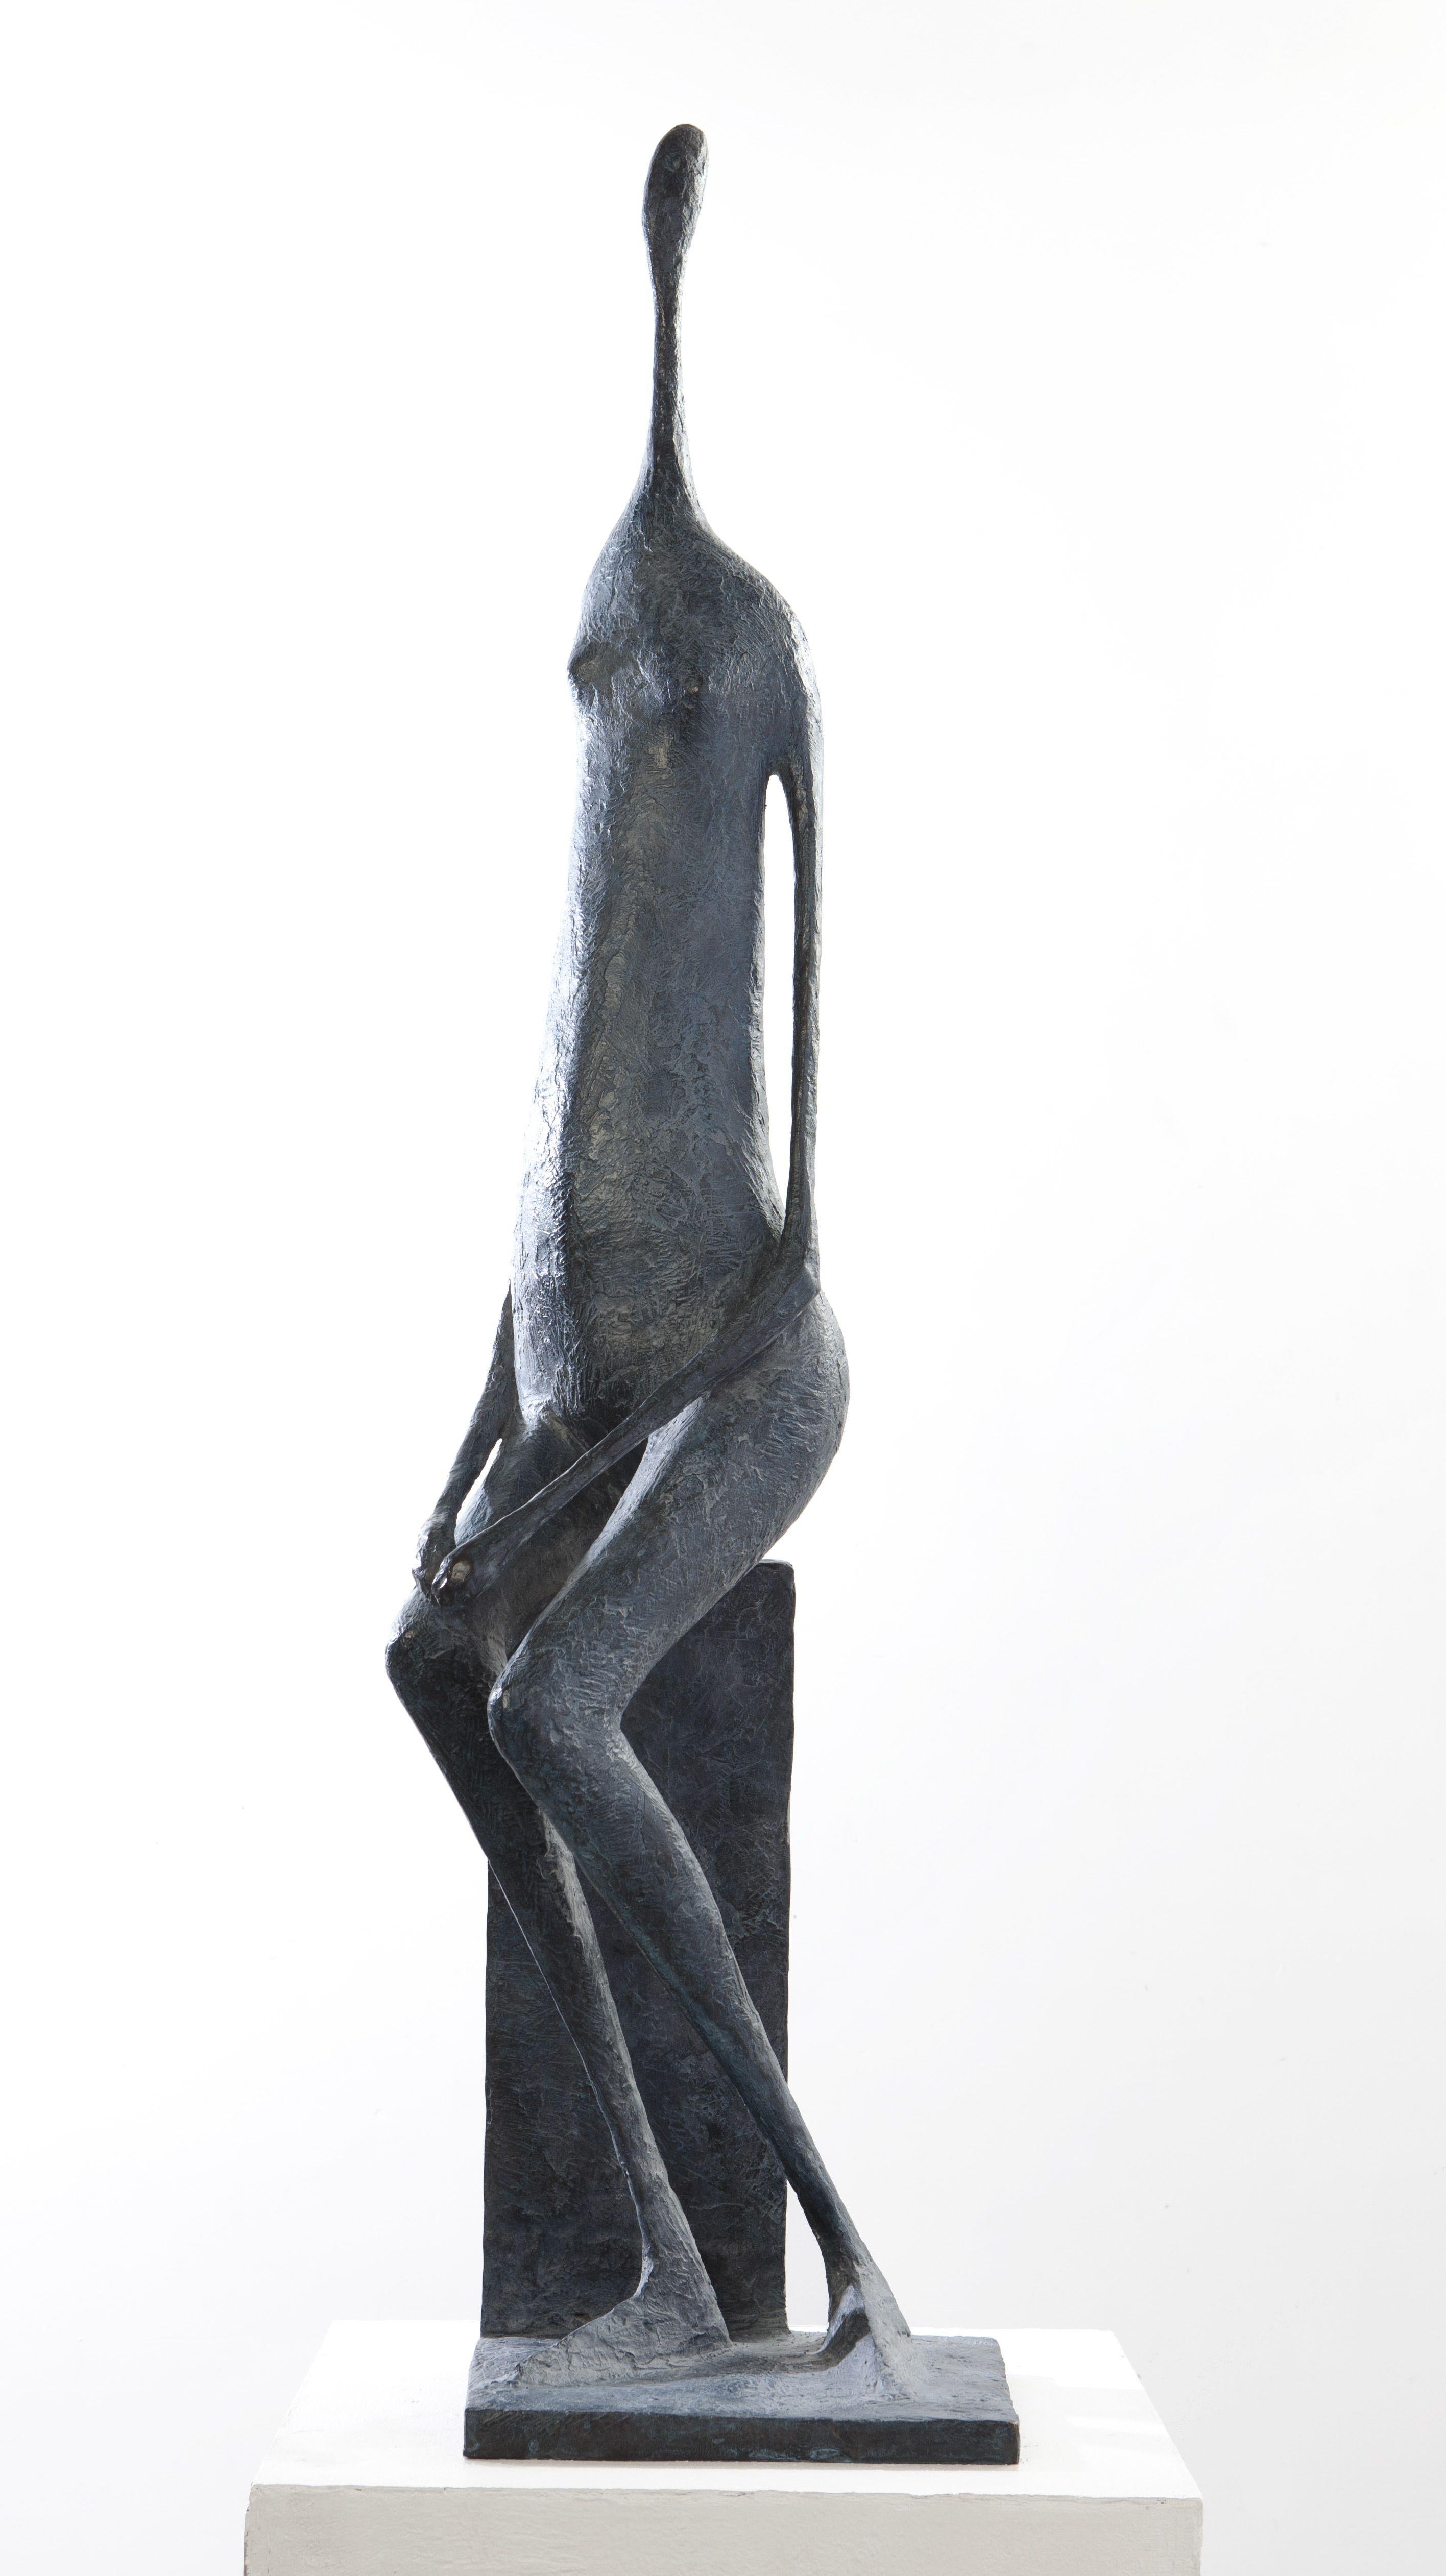 Große gebratene Figur I (Grande figure assise I)  ist eine großformatige Skulptur des französischen zeitgenössischen Künstlers Pierre Yermia. Bronze, 111 cm × 24 cm × 22 cm. Auflage von 8 + 4 A.P. Jeder Abguss ist signiert und nummeriert. 
Pierre